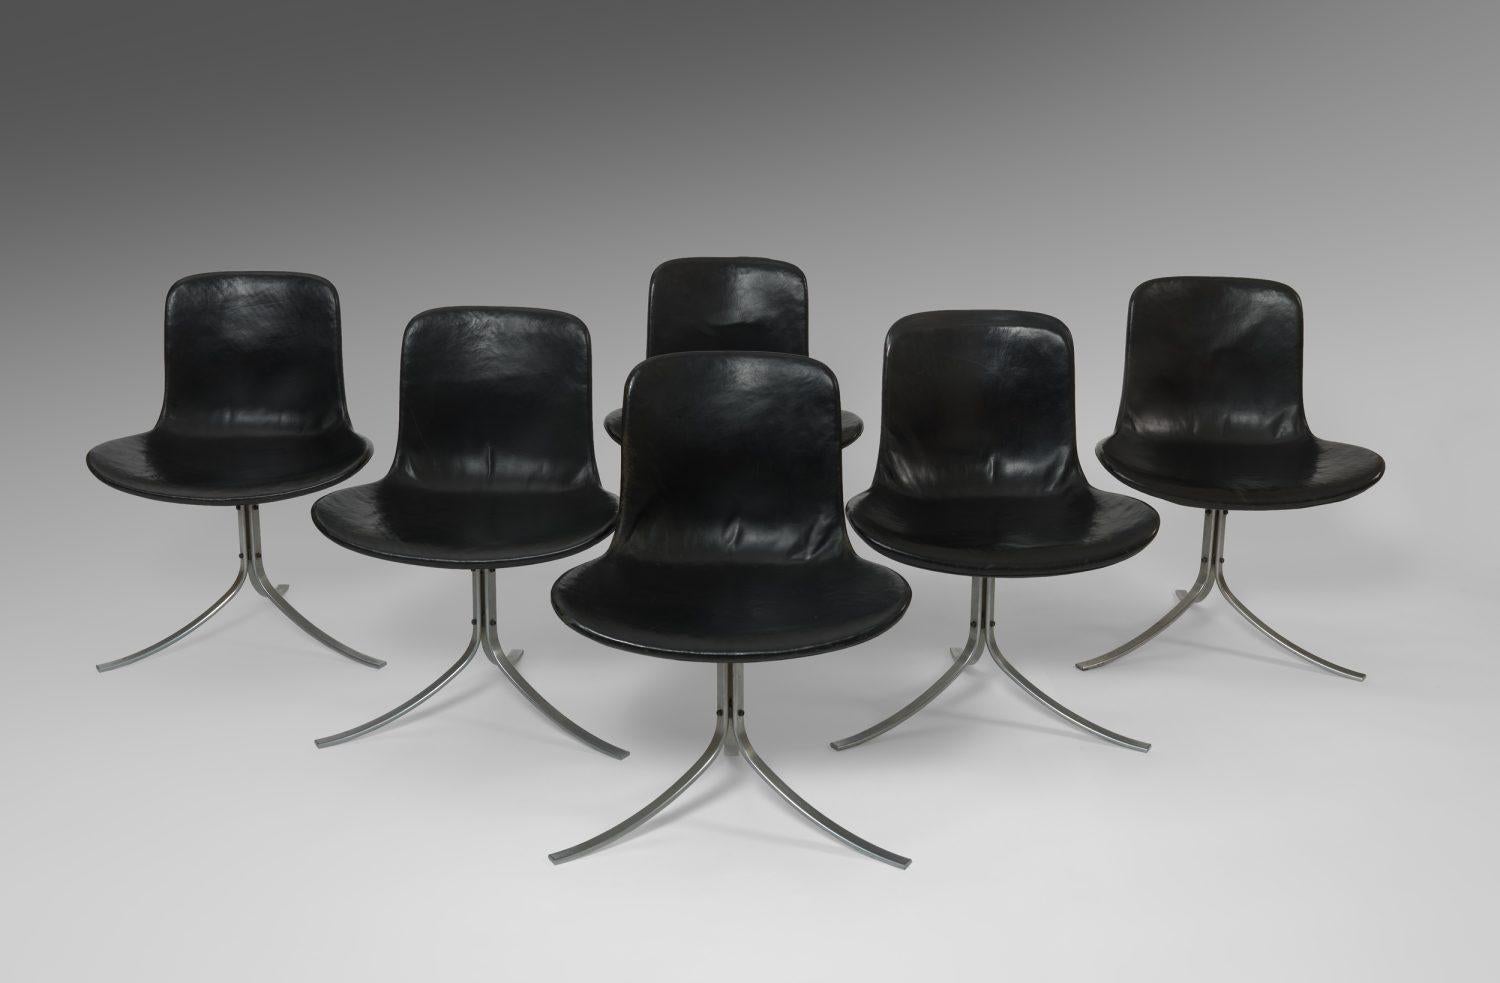 Satz von sechs Esszimmerstühlen Modell PK9, entworfen von Poul Kjaerholm für E Kold Christensen,
Dänemark, 1960er Jahre.

Leder und Stahl.

Gestempelt.

Die Kombination der Esszimmerstühle mit dem Esstisch Modell PK54 von Poul Kjaerholm ist eine